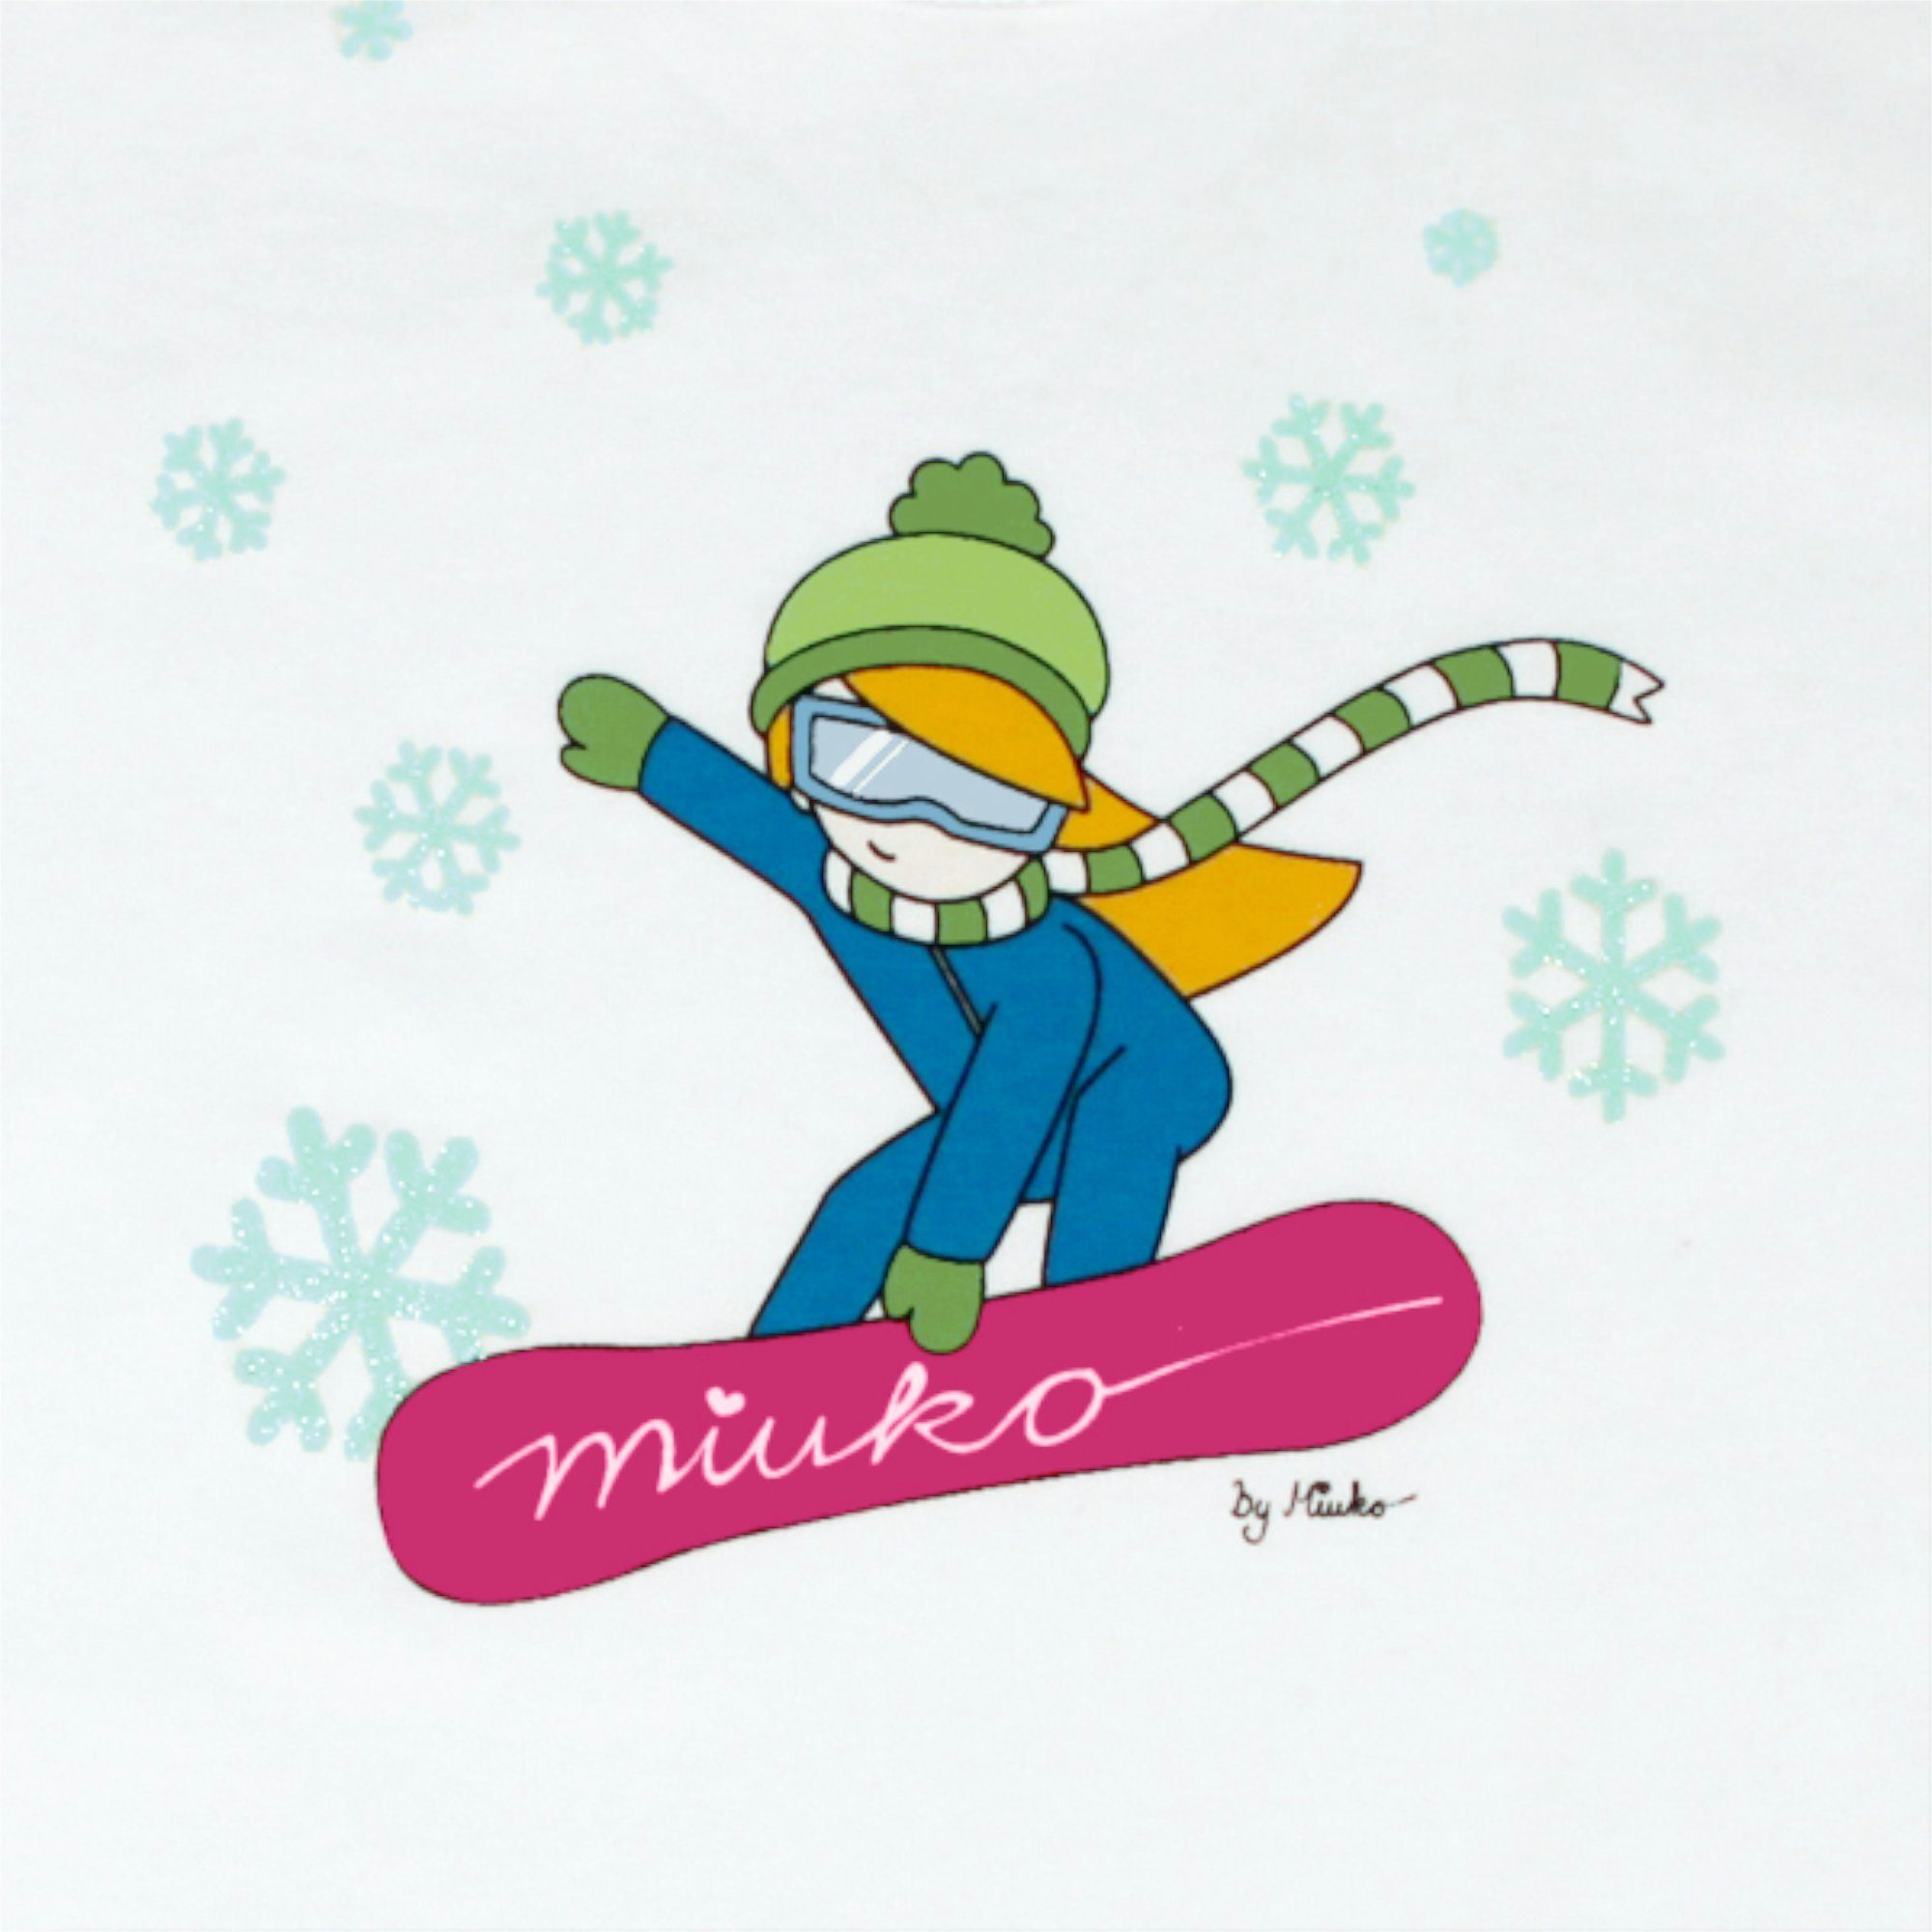 Motiv Mädchen 152 T-Shirt oder 134 Langarmshirt pink, weiß 128 122 langärmlig, 158 Miuko 100% 146 140 für 164 Baumwolle Snowboarderin